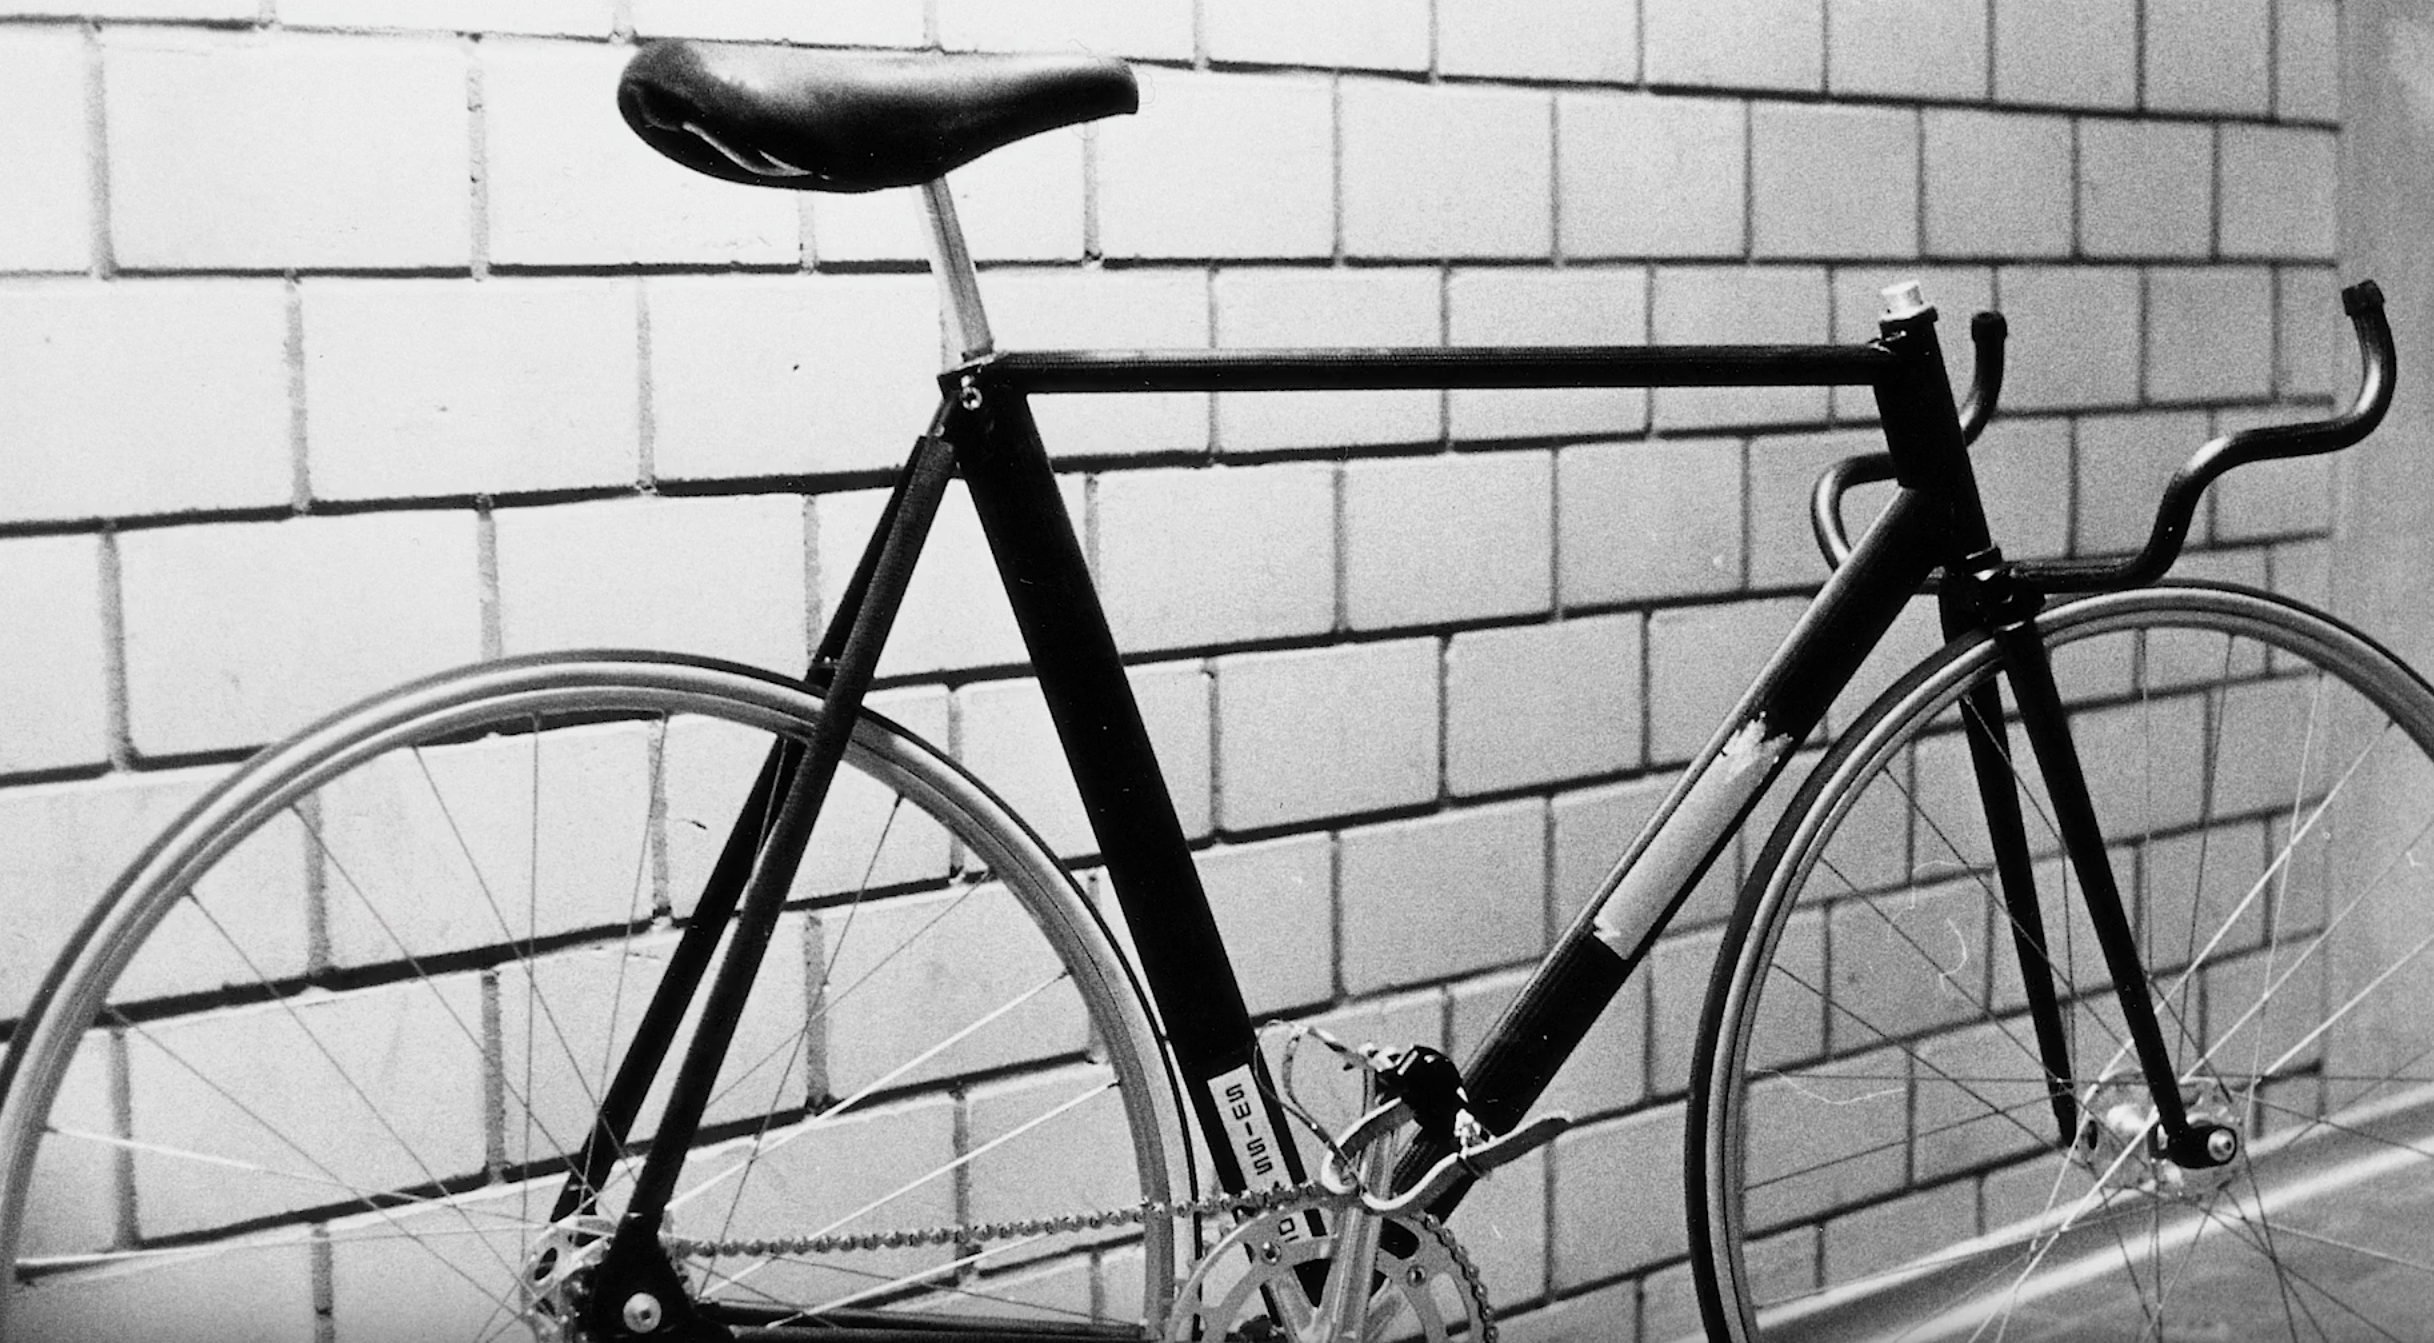 first carbon fiber bike